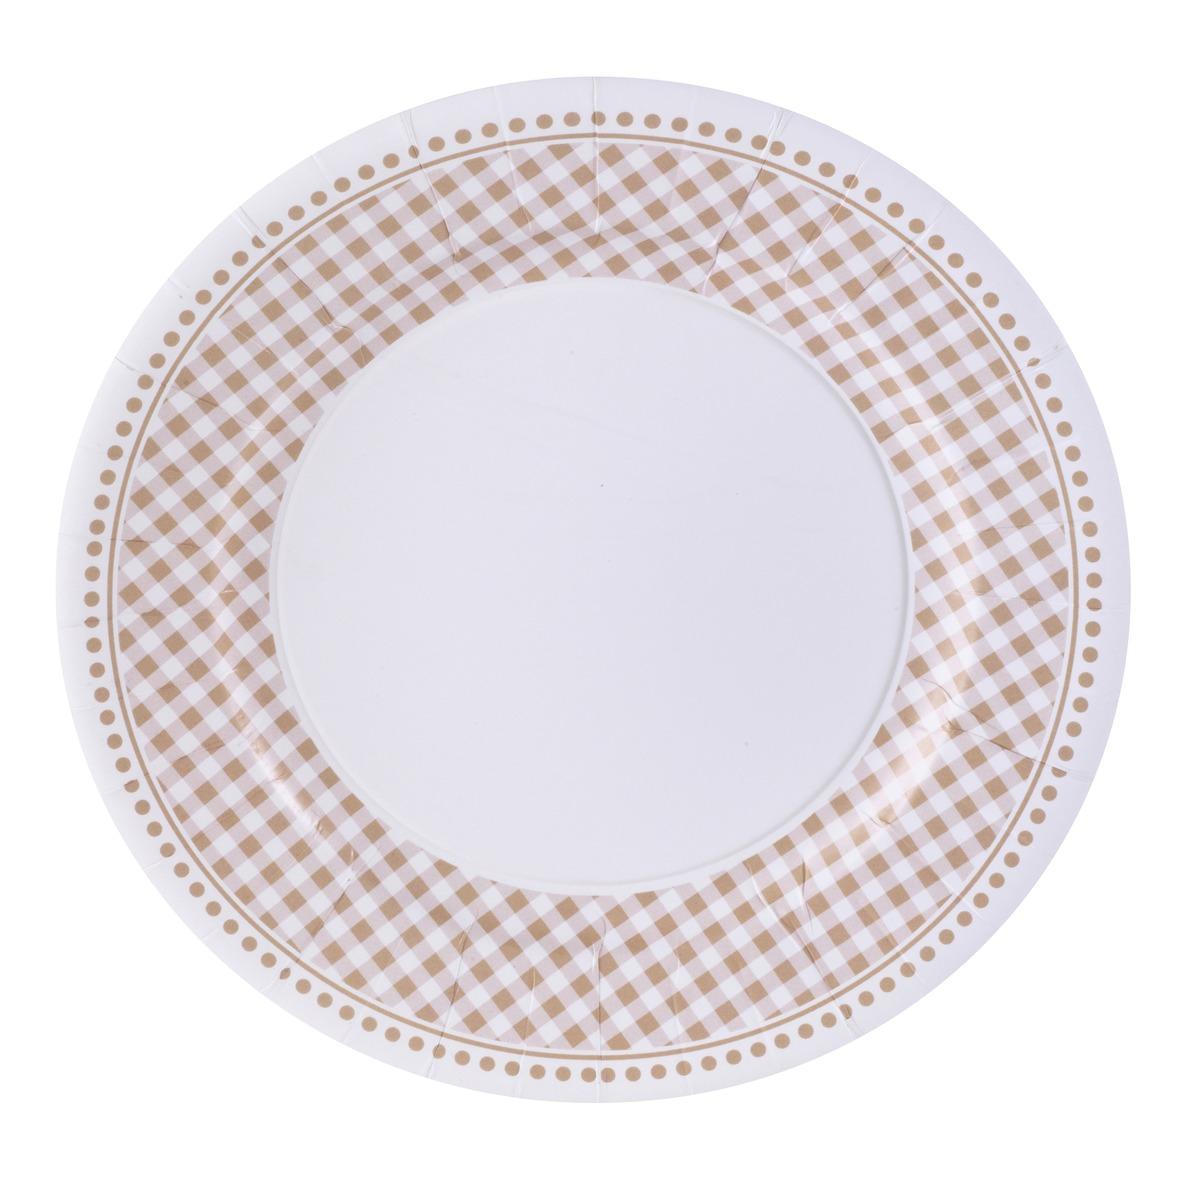 Lot de 10 assiettes en carton motif vichy - Diamètre 23 cm - beige, blanc